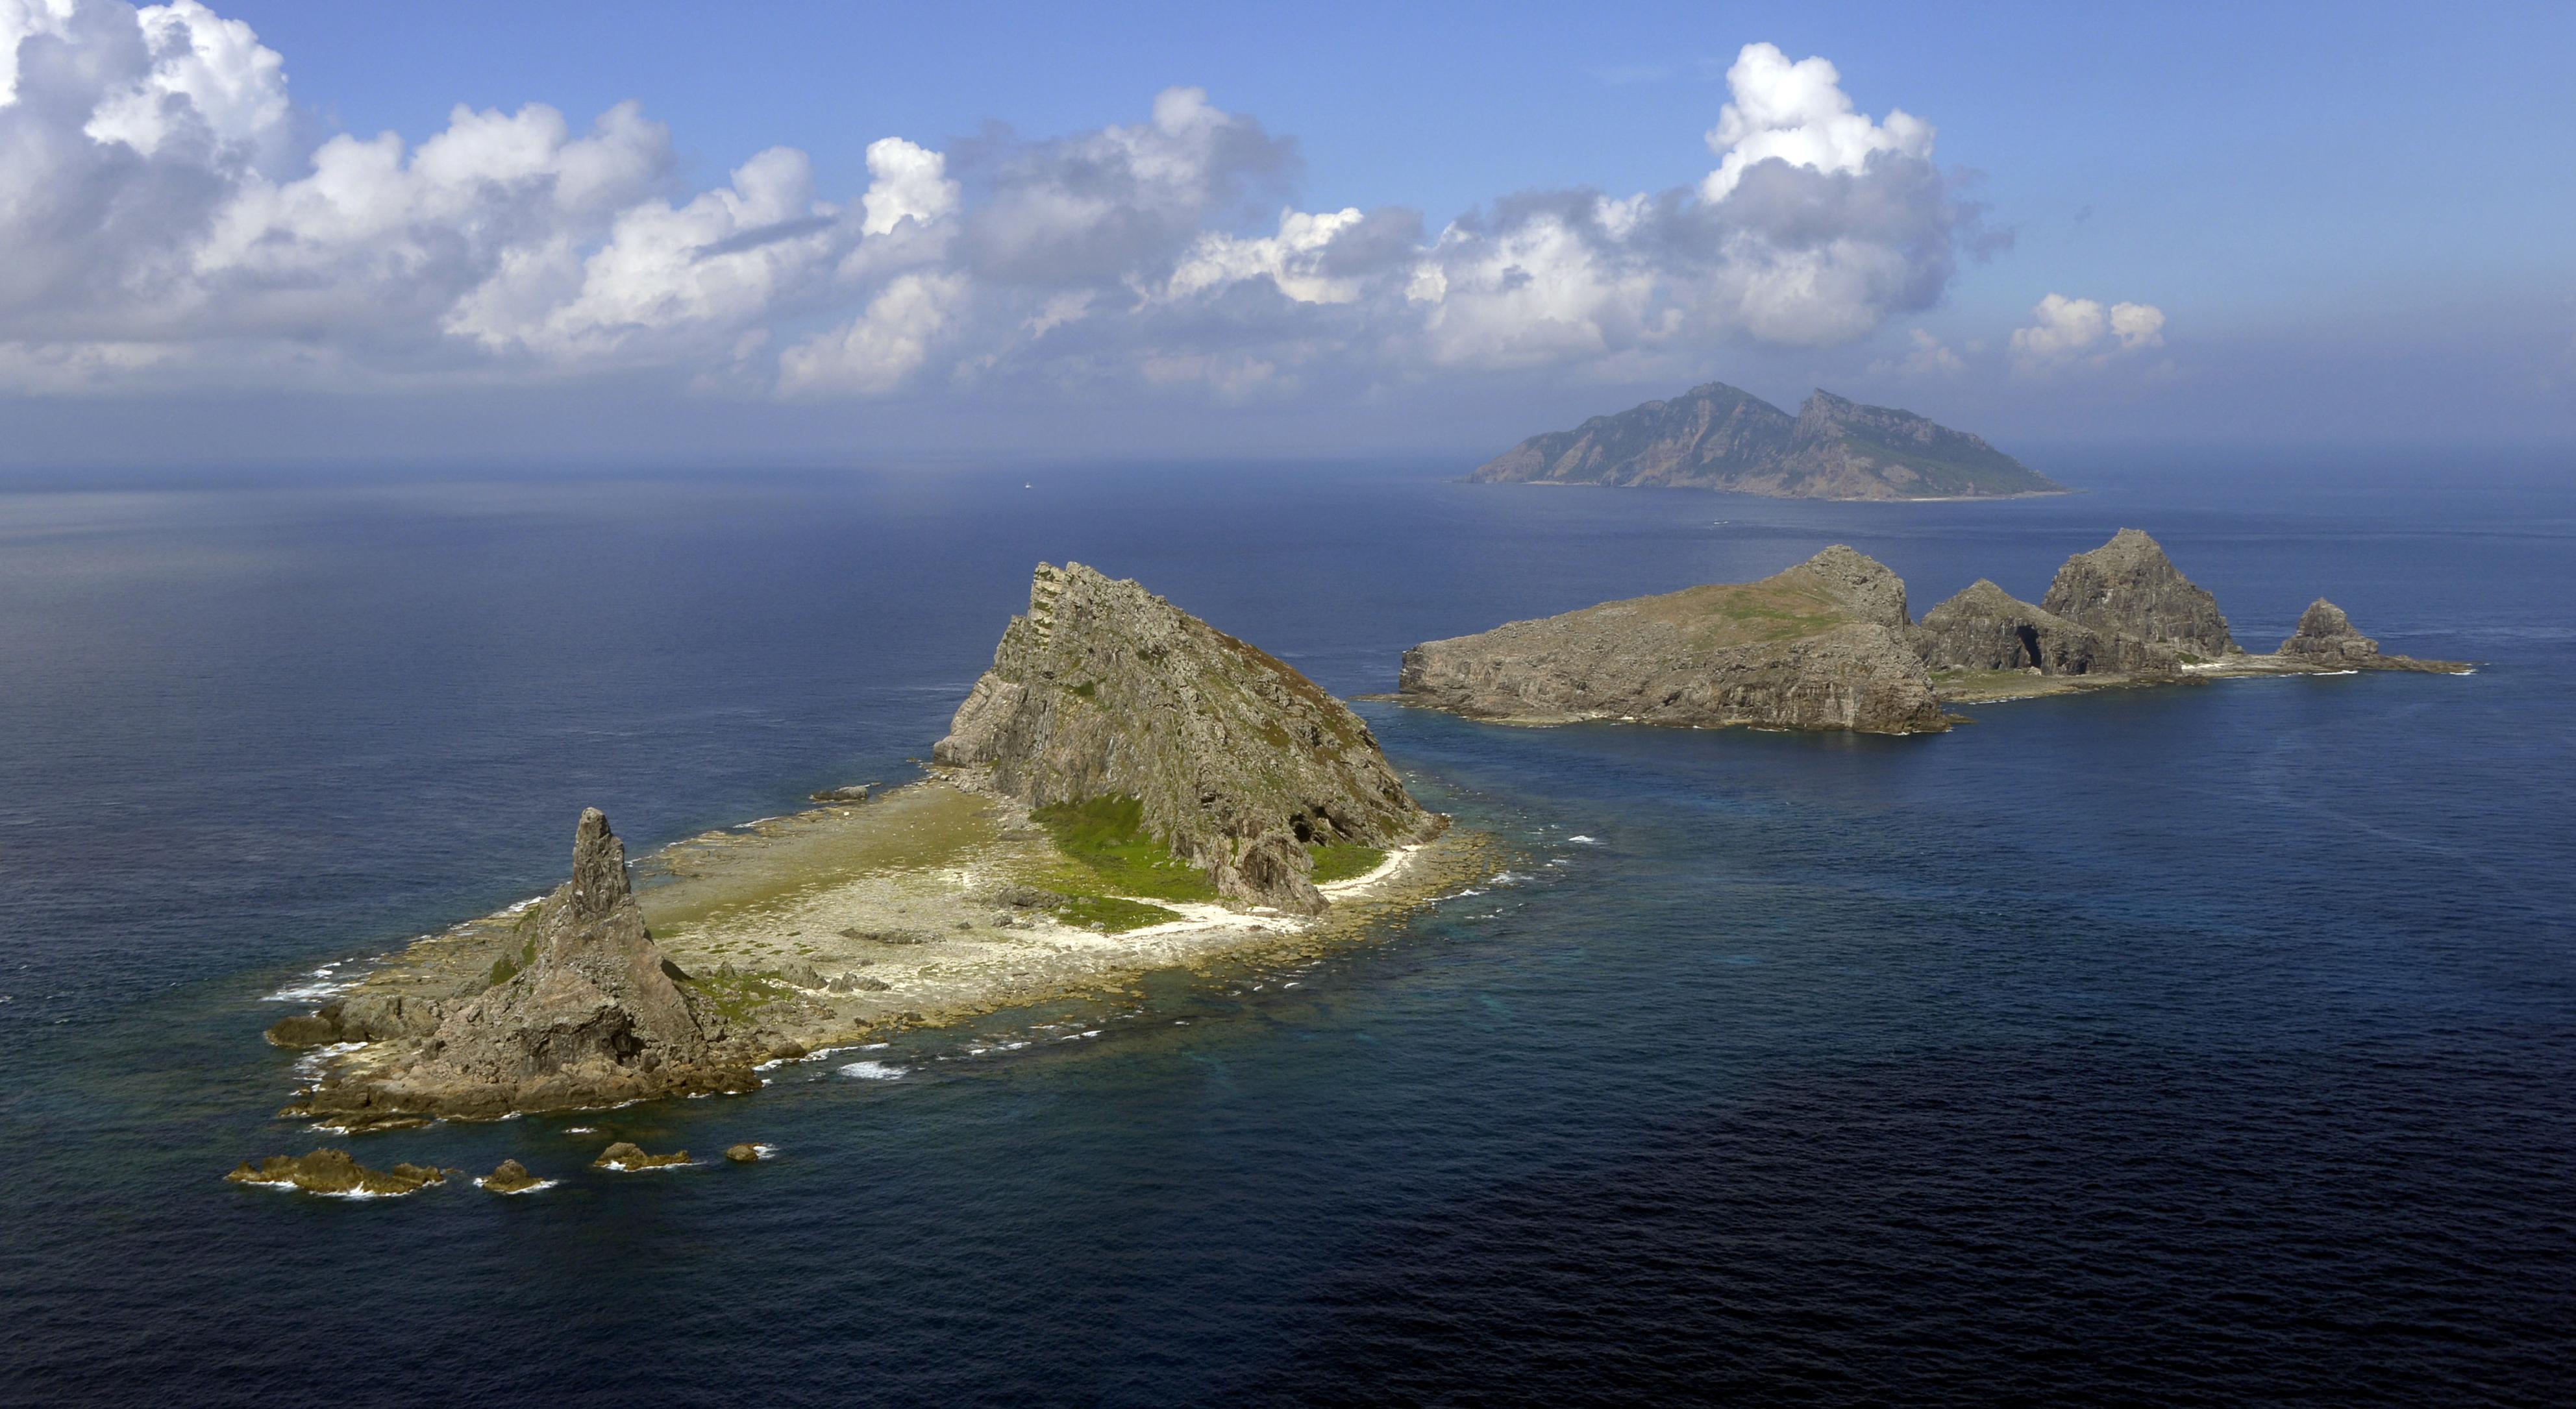 沖縄・石垣の尖閣諸島周辺を中国公船４隻航行 １隻は機関砲搭載か 海保 